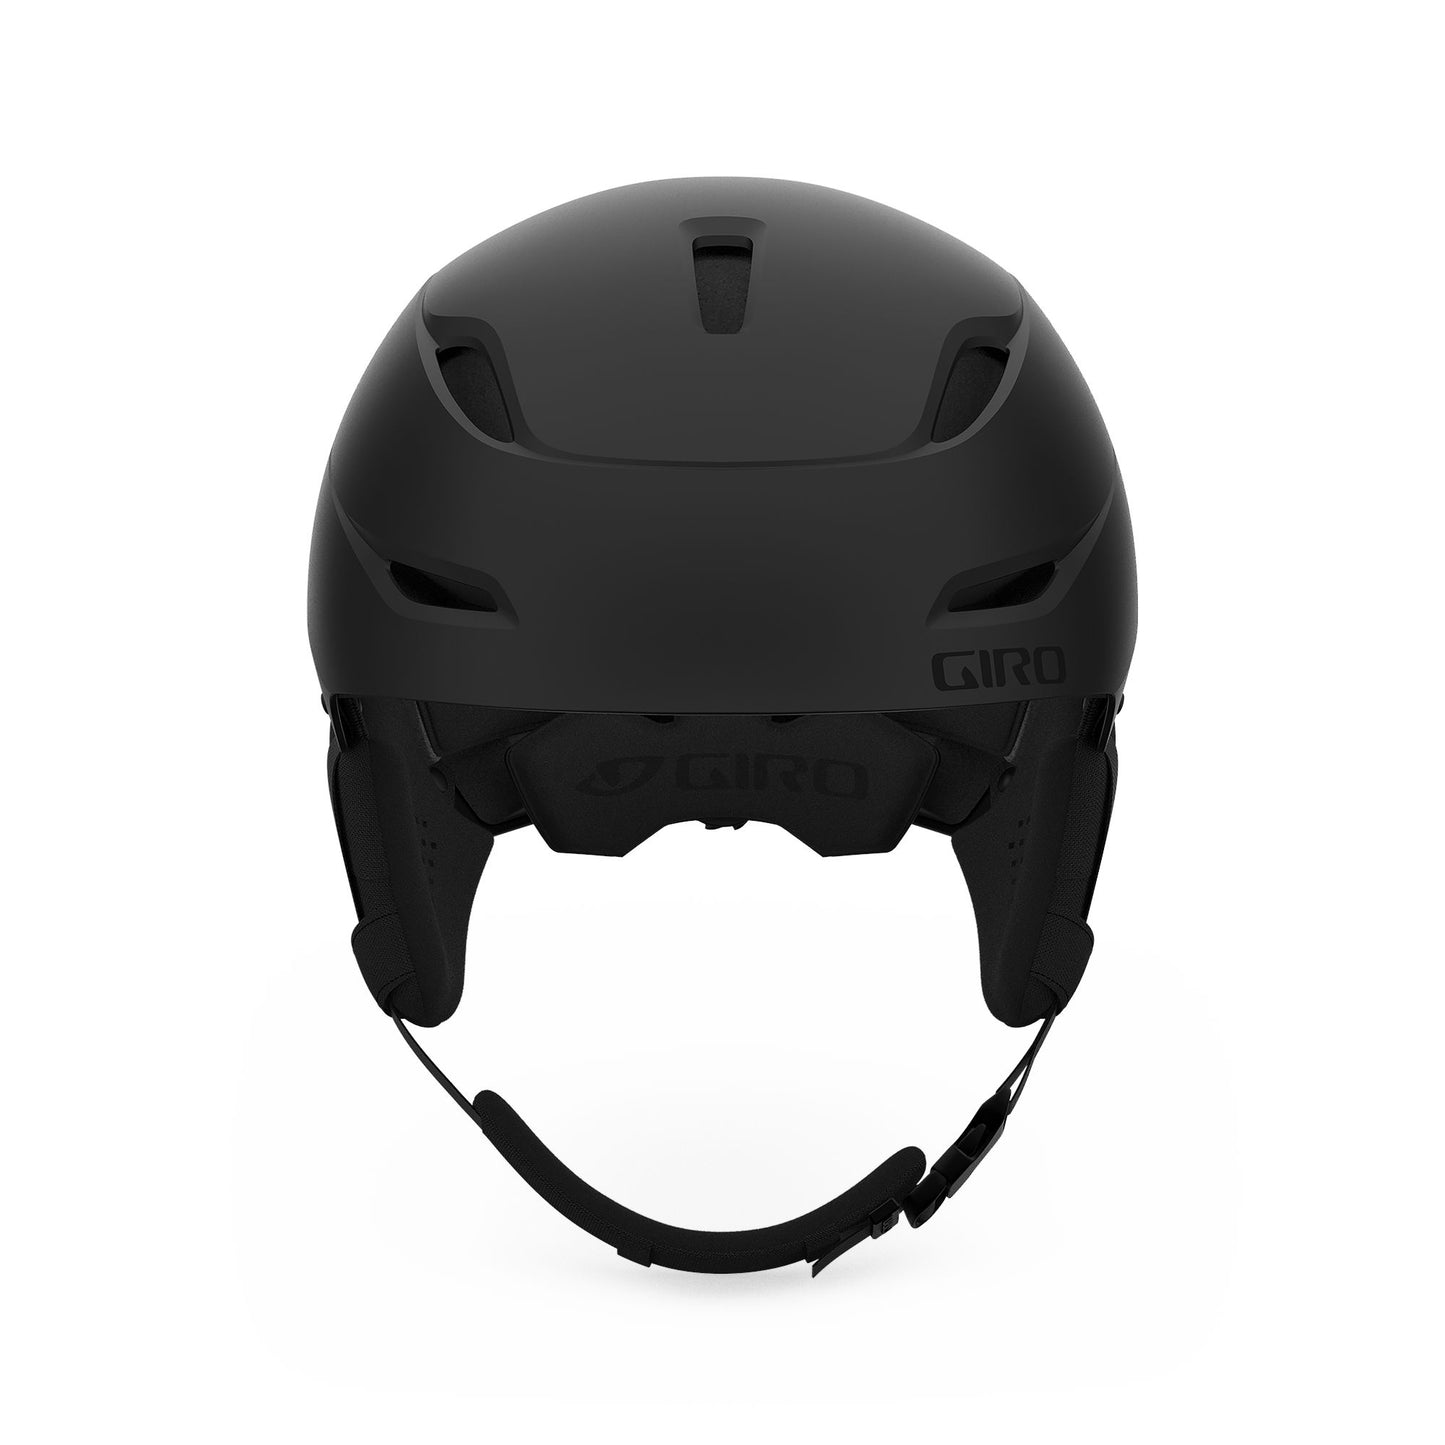 Giro Ratio MIPS Helmet Matte Black Snow Helmets